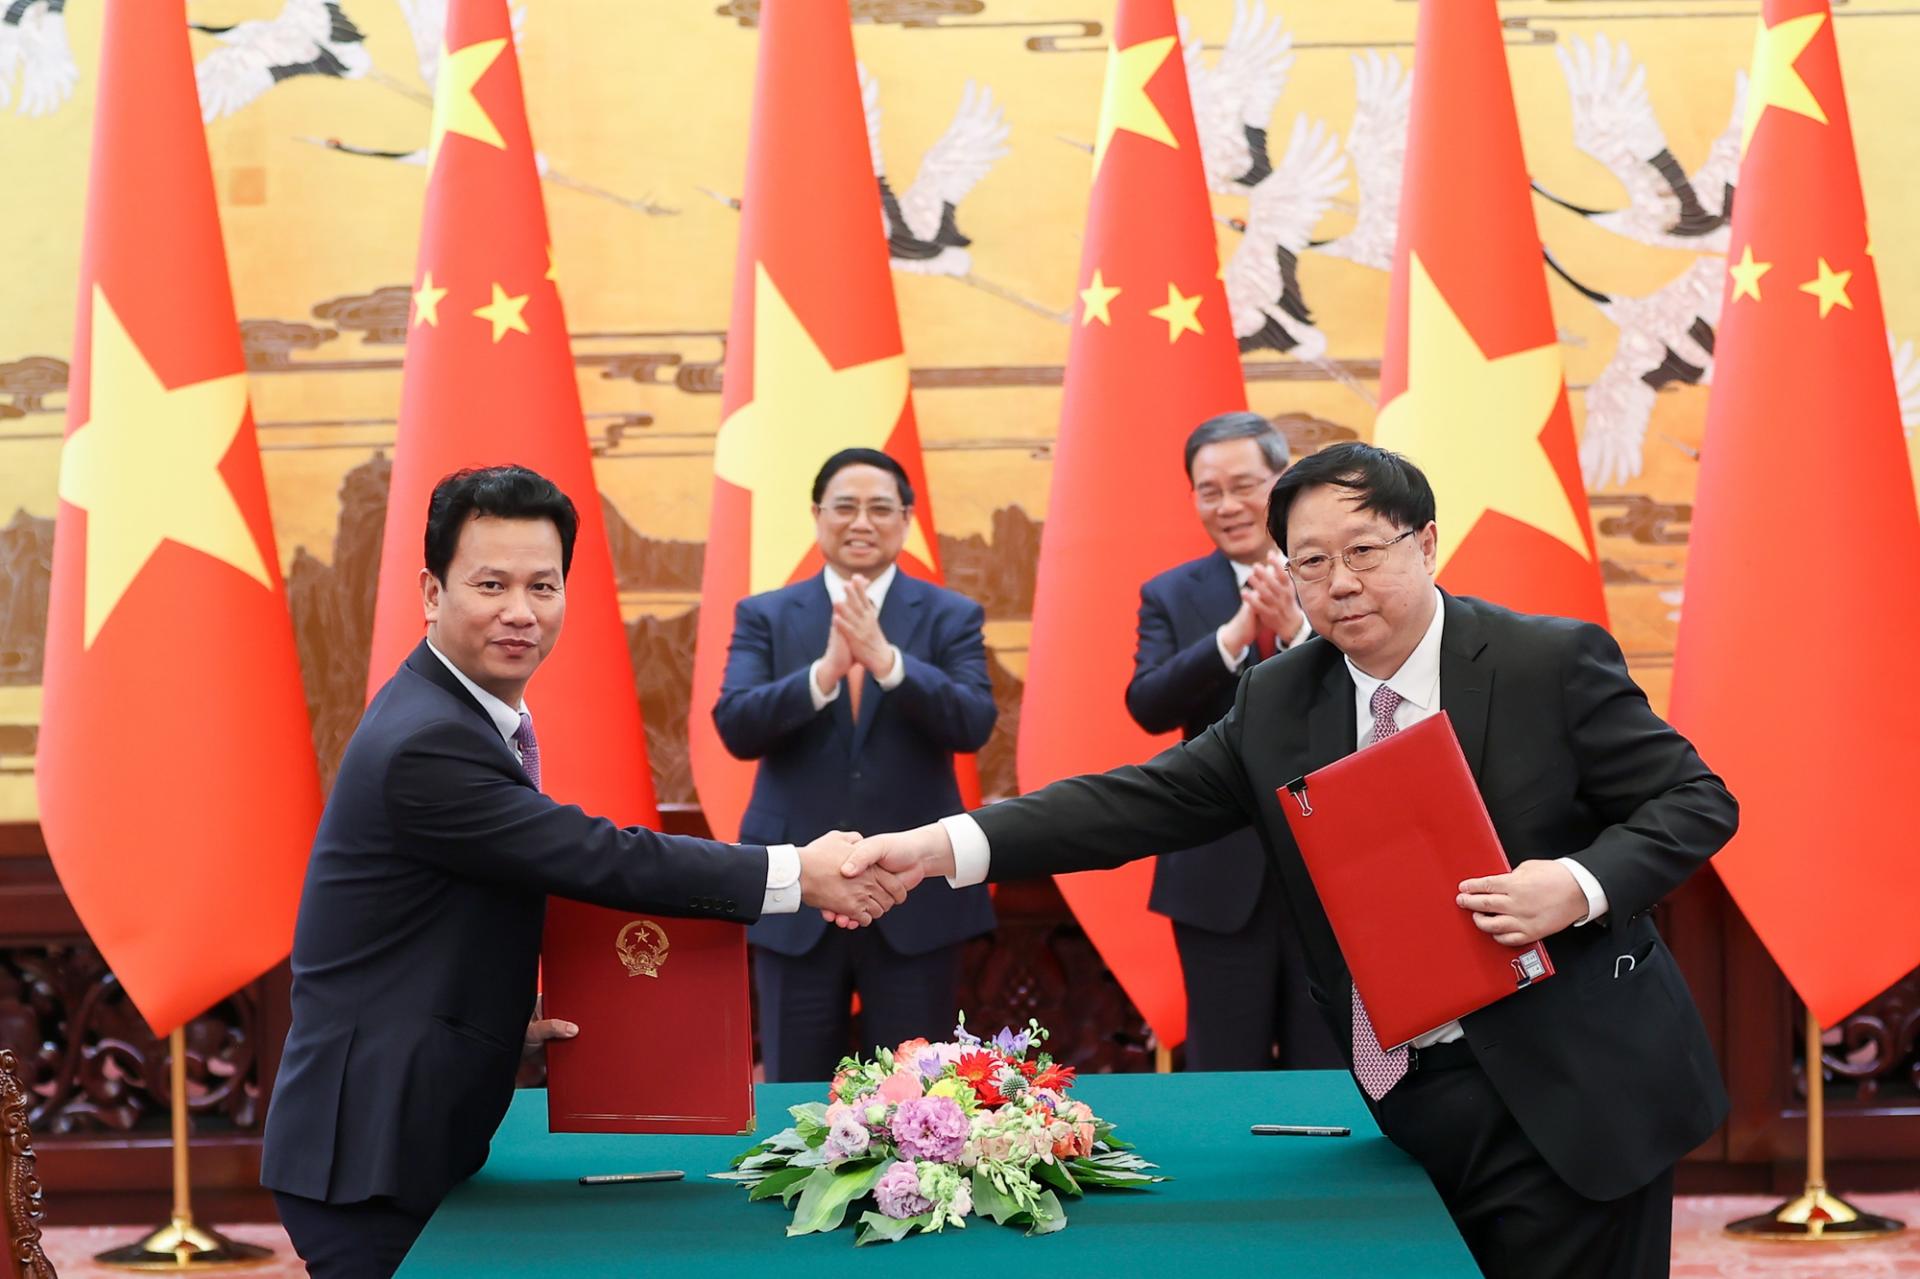 Hai Thủ tướng chứng kiến lễ ký và trao Thỏa thuận hợp tác nghiên cứu quản lý tổng hợp môi trường biển và hải đảo vùng Vịnh Bắc Bộ giữa Bộ Tài nguyên và Môi trường Việt Nam và Bộ Tài nguyên Thiên nhiên Trung Quốc